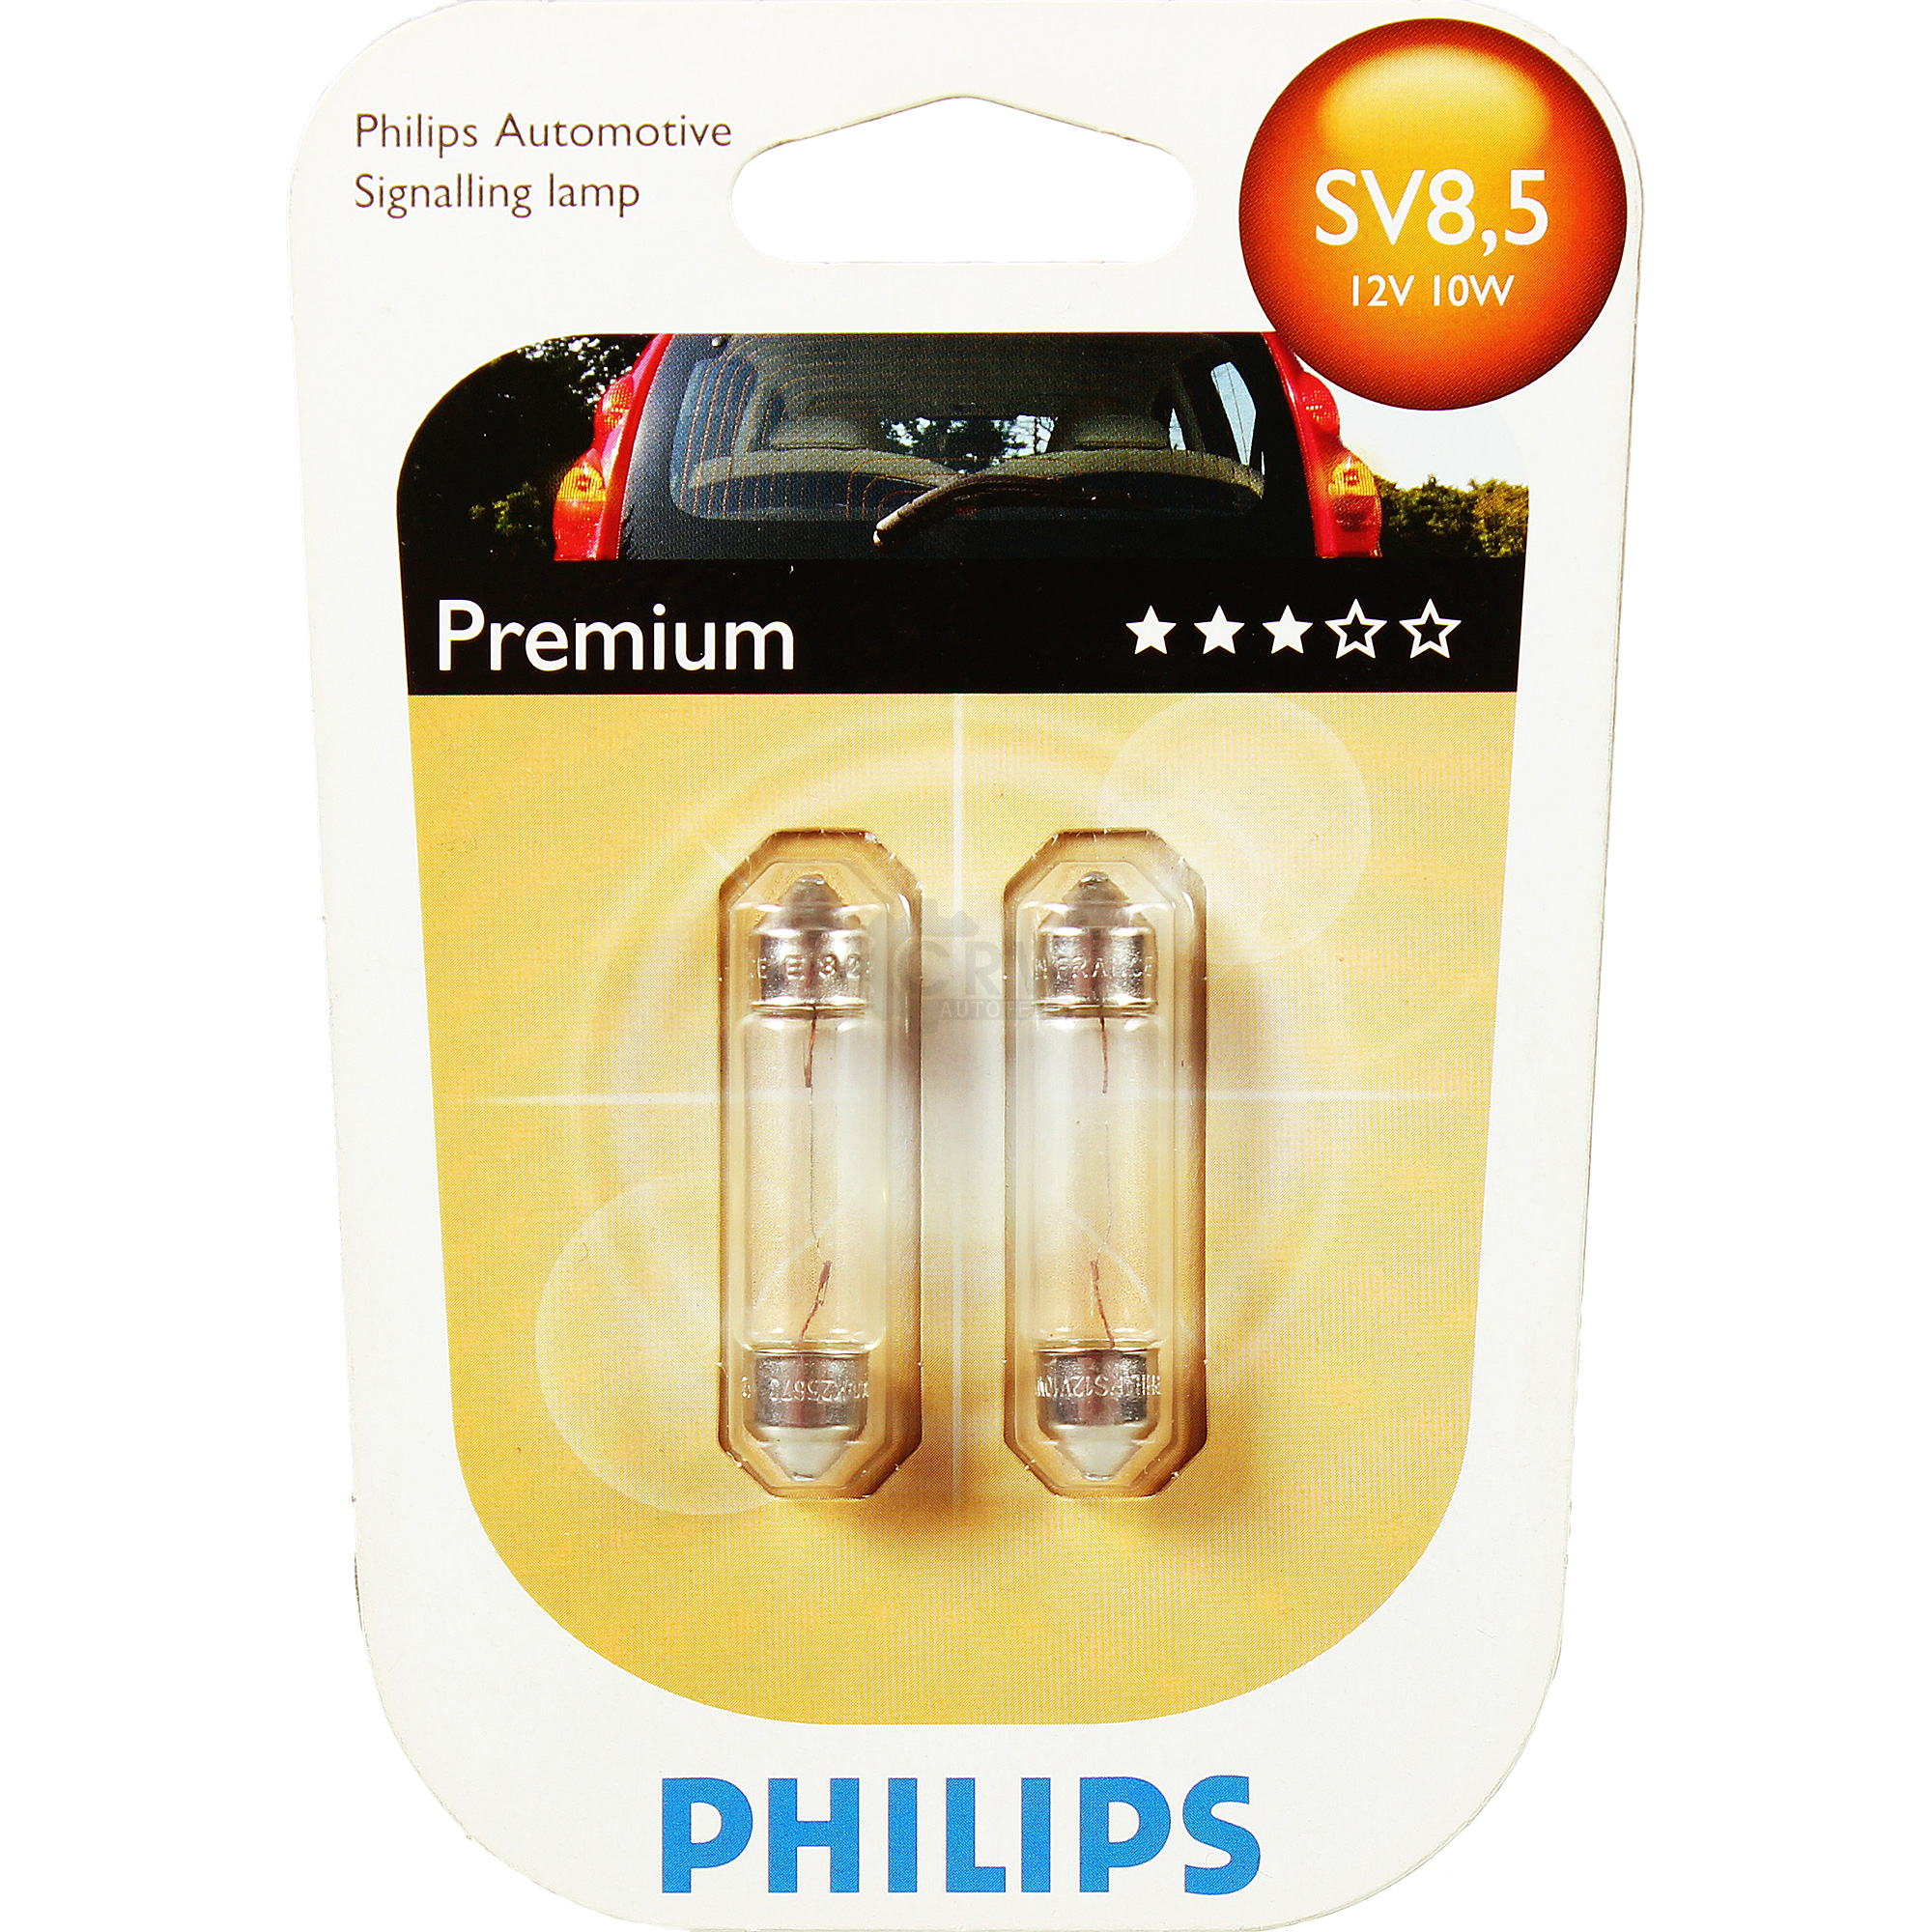 Philips Premium 2x C10W-Soffittenlampe SV8,5 12V 10W Blister Lampe Birne